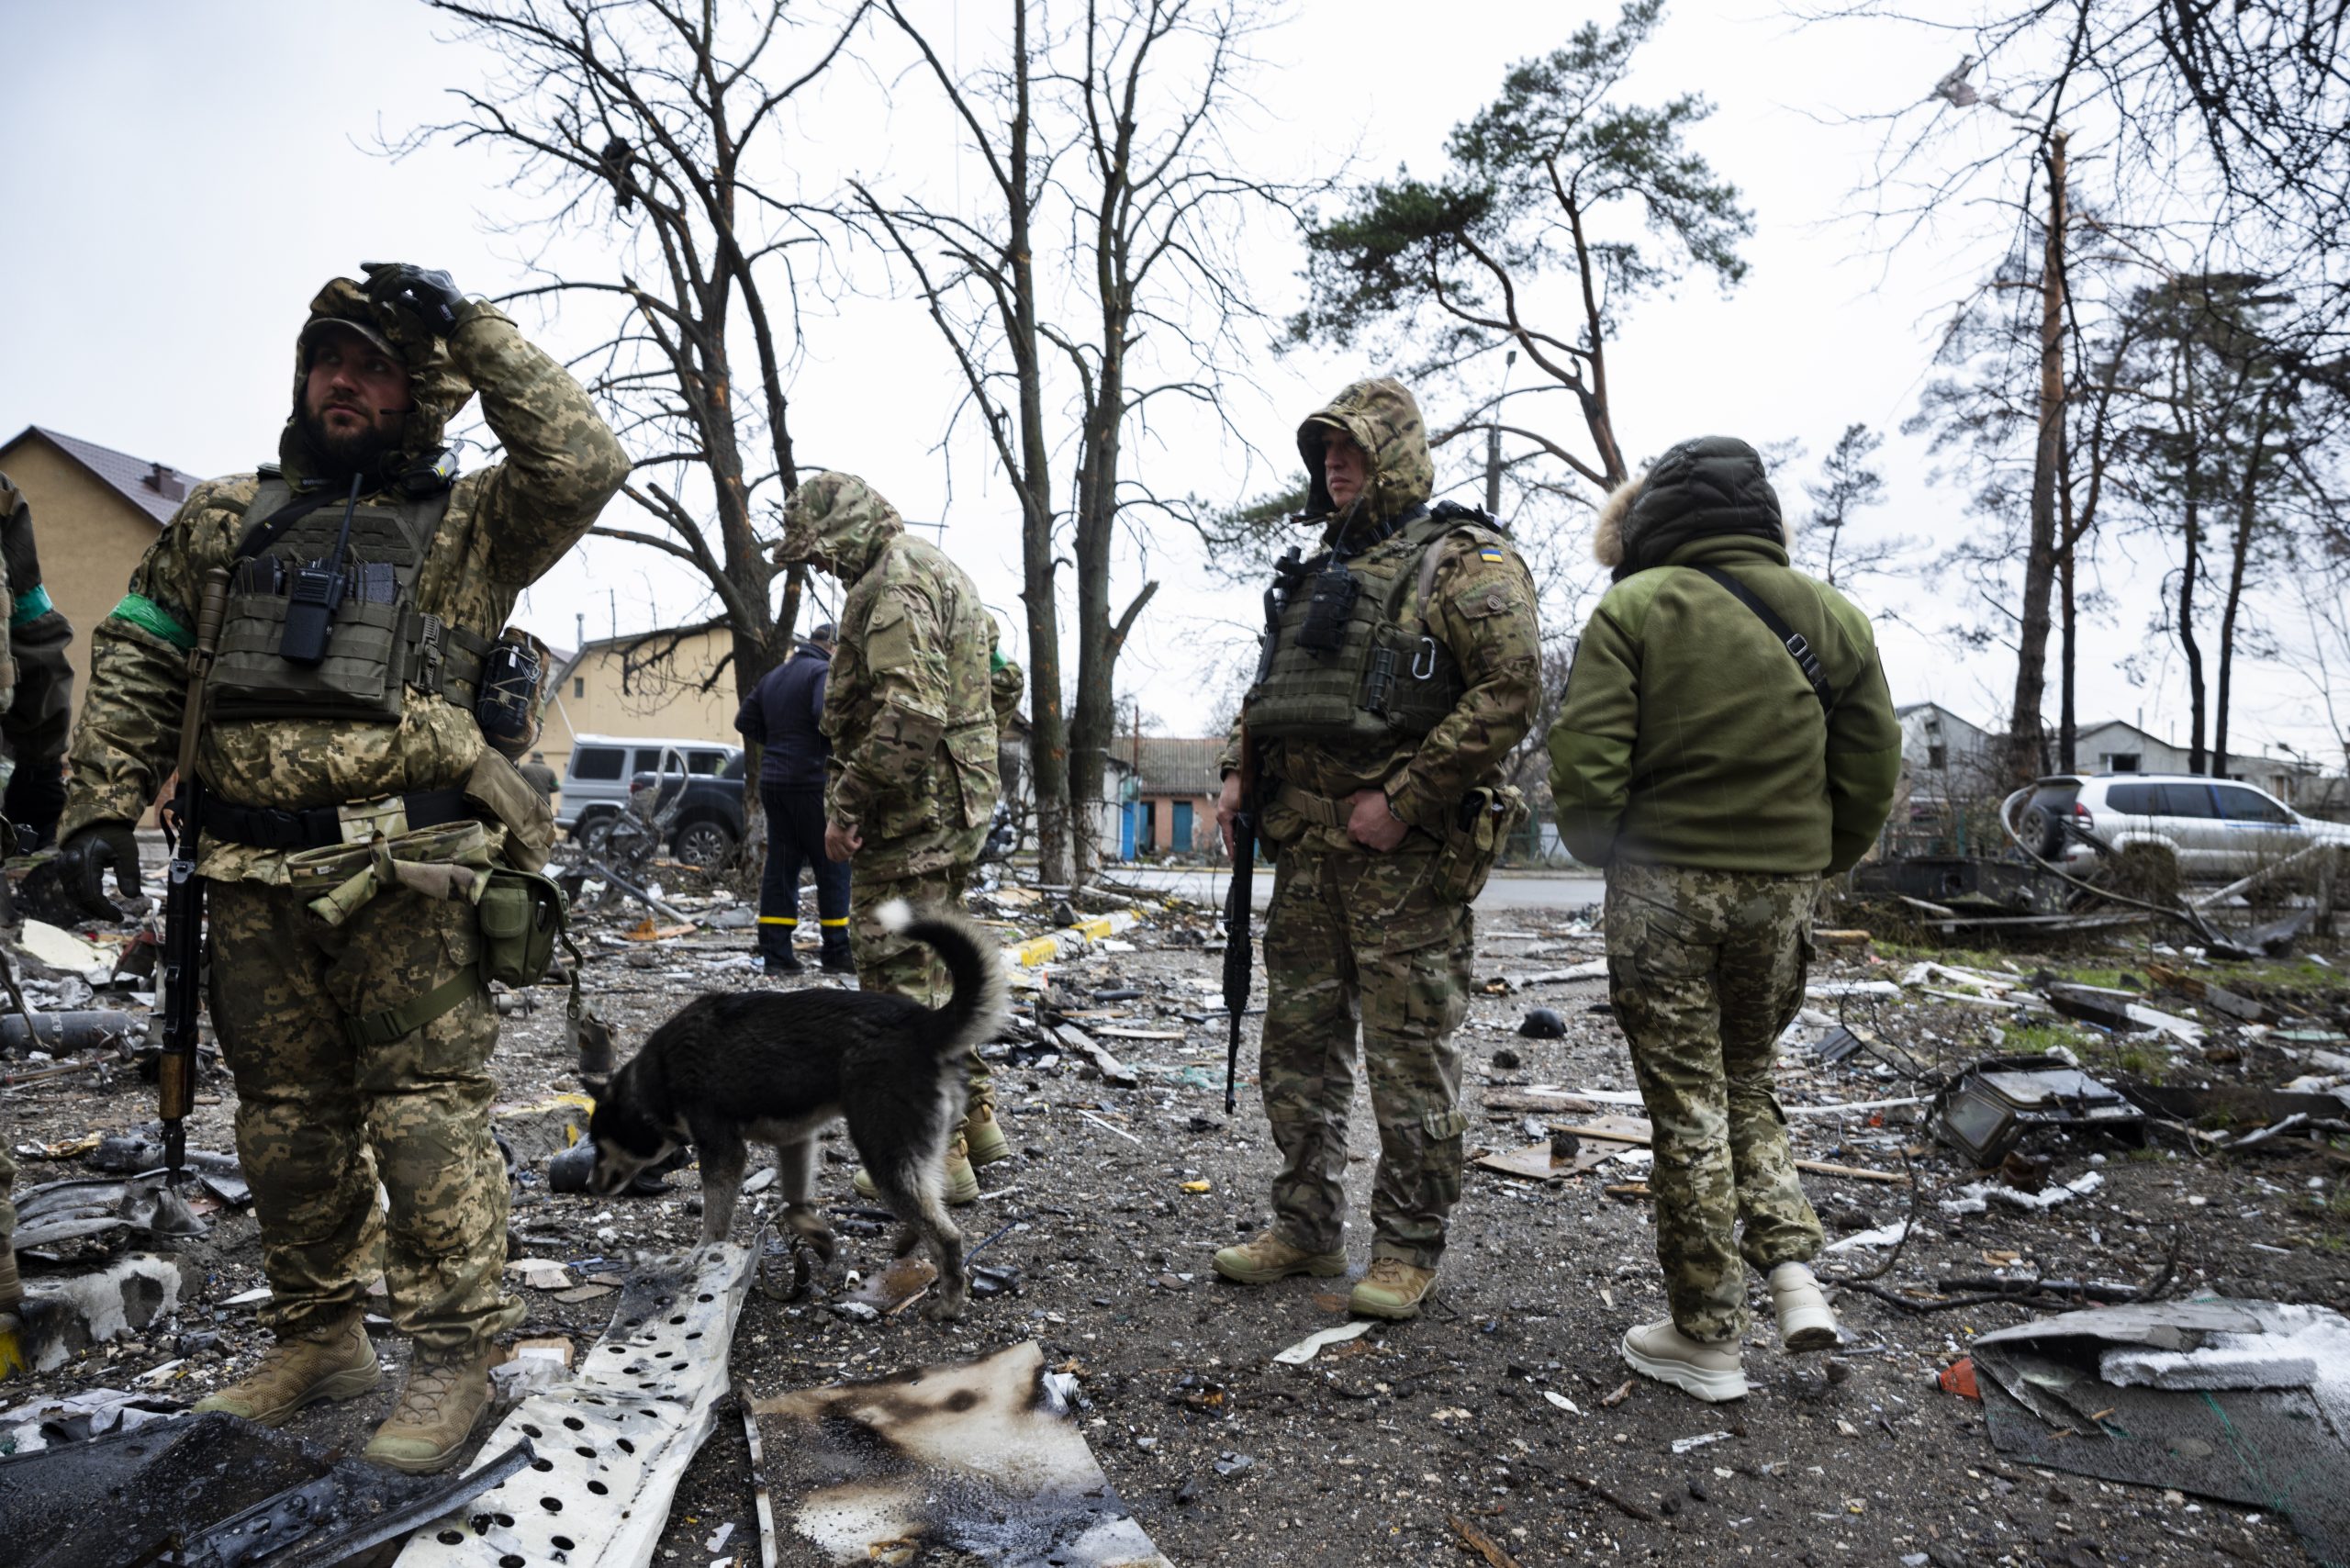 Des militaires avec un chien au milieu des décombres causés par les bombardements à Boutcha en Ukraine.